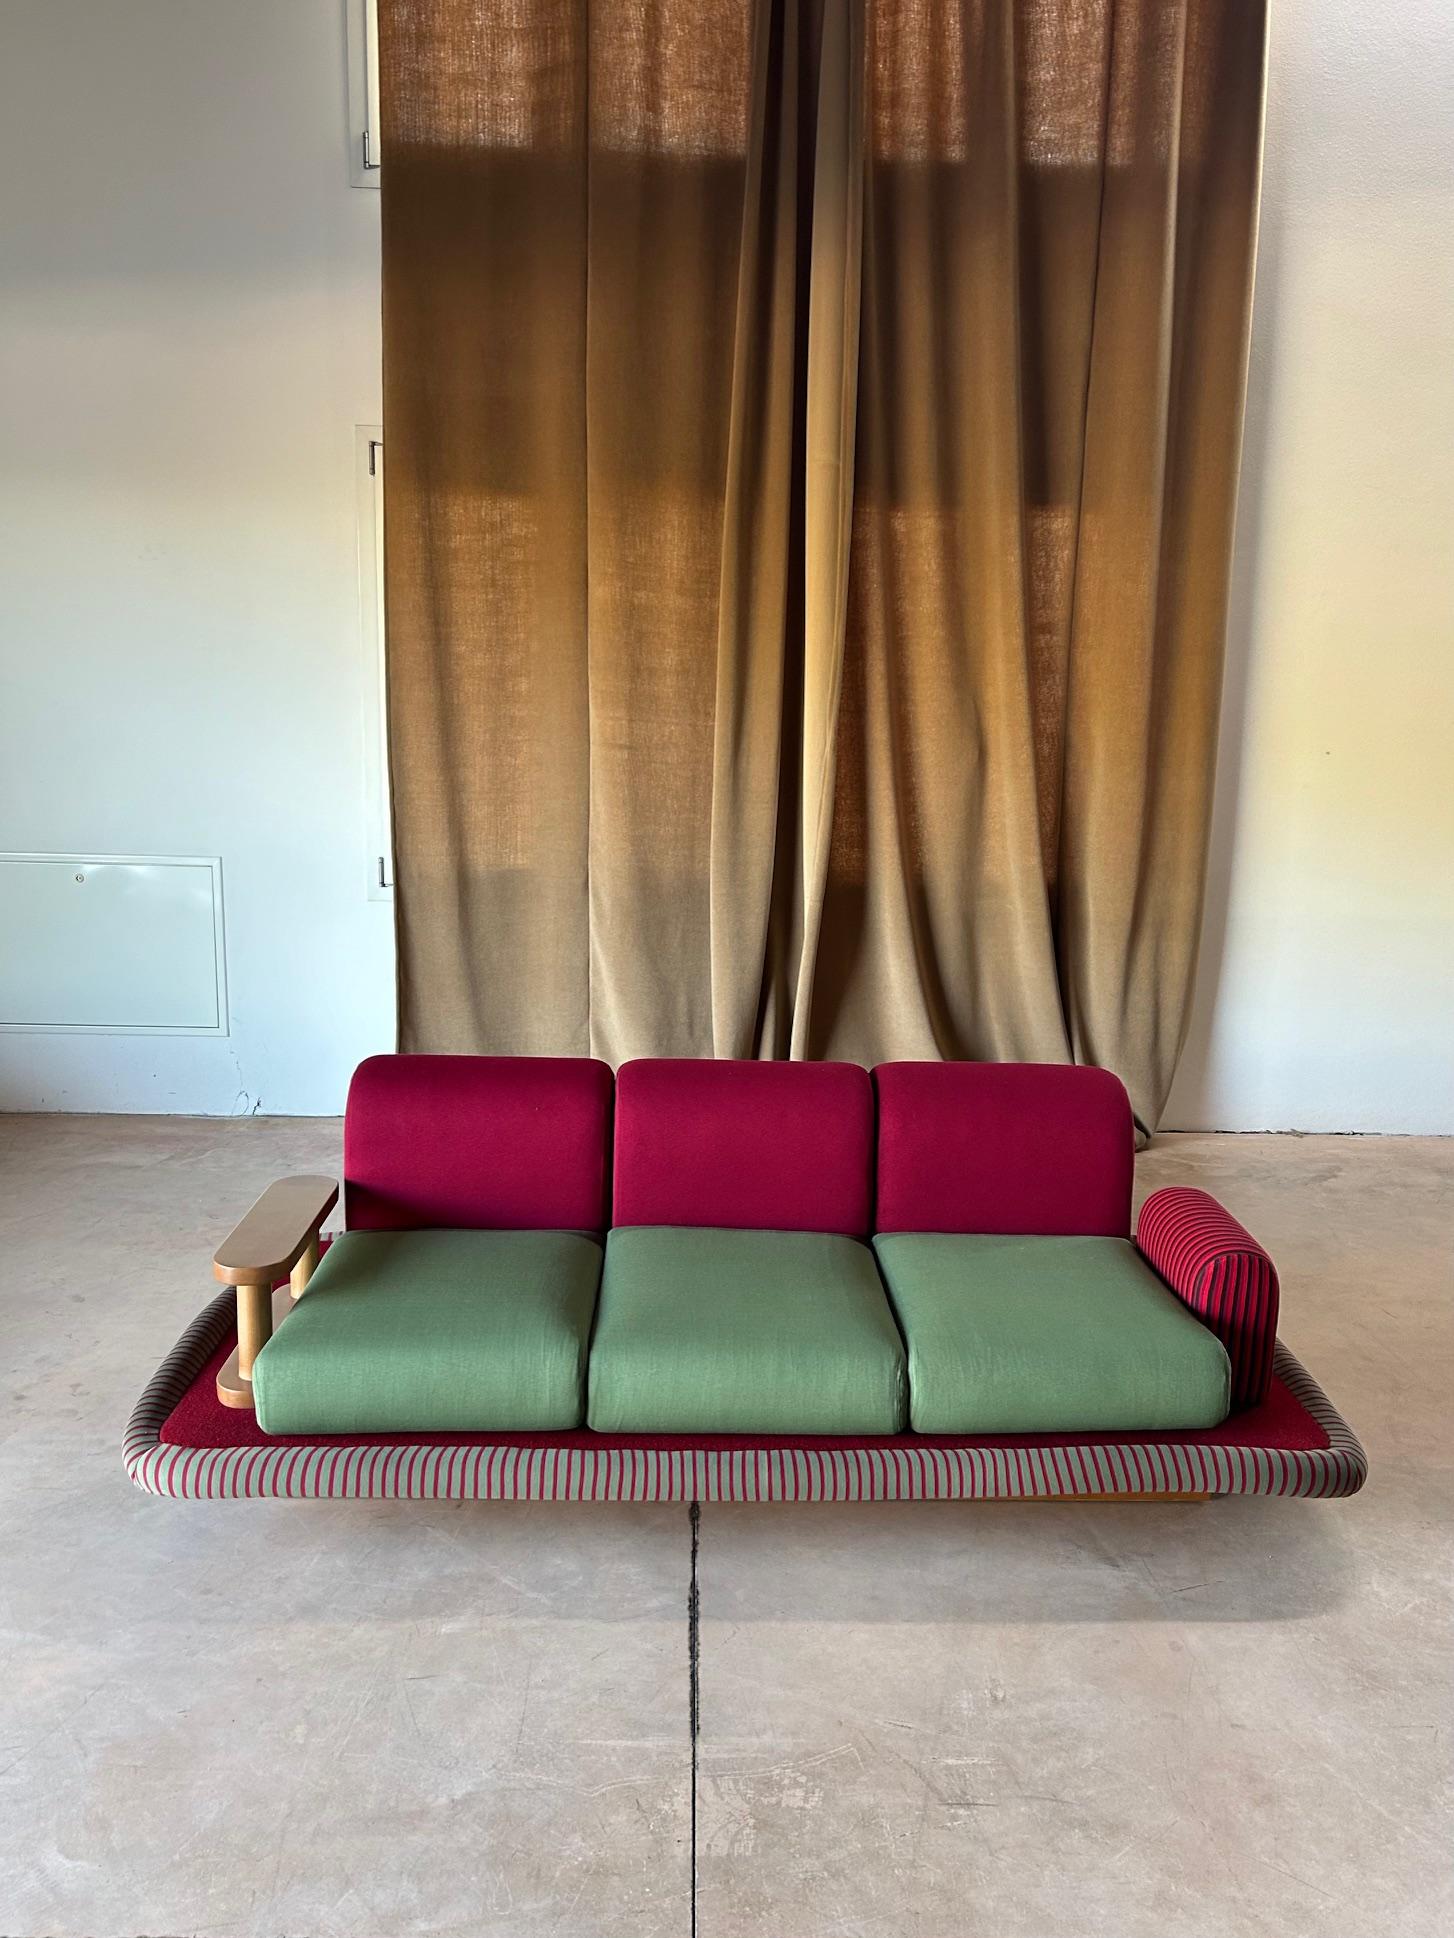 Ettore Sottsass a conçu ce canapé après avoir connu la culture indienne.
Un voyage crucial dans sa formation est celui de 1961 en Inde, entrepris avec Fernanda Pivano. Au cours de ce voyage, Sottsass découvre que la culture indienne est fortement